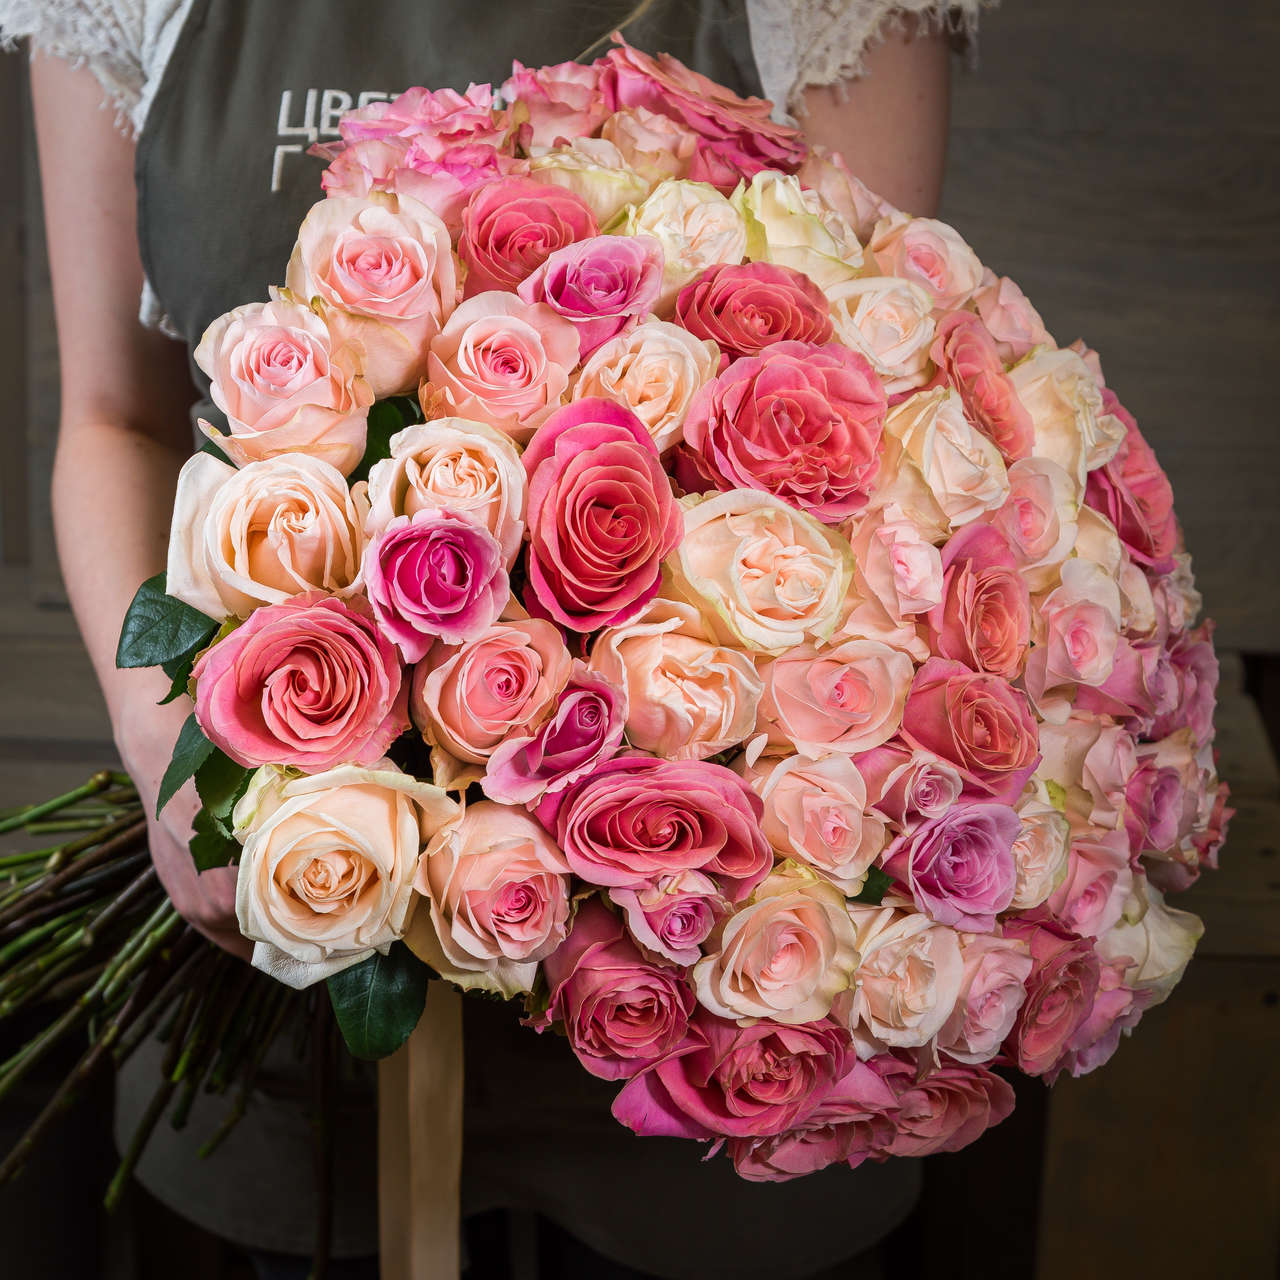 Букет  101 роза из разных оттенков розового